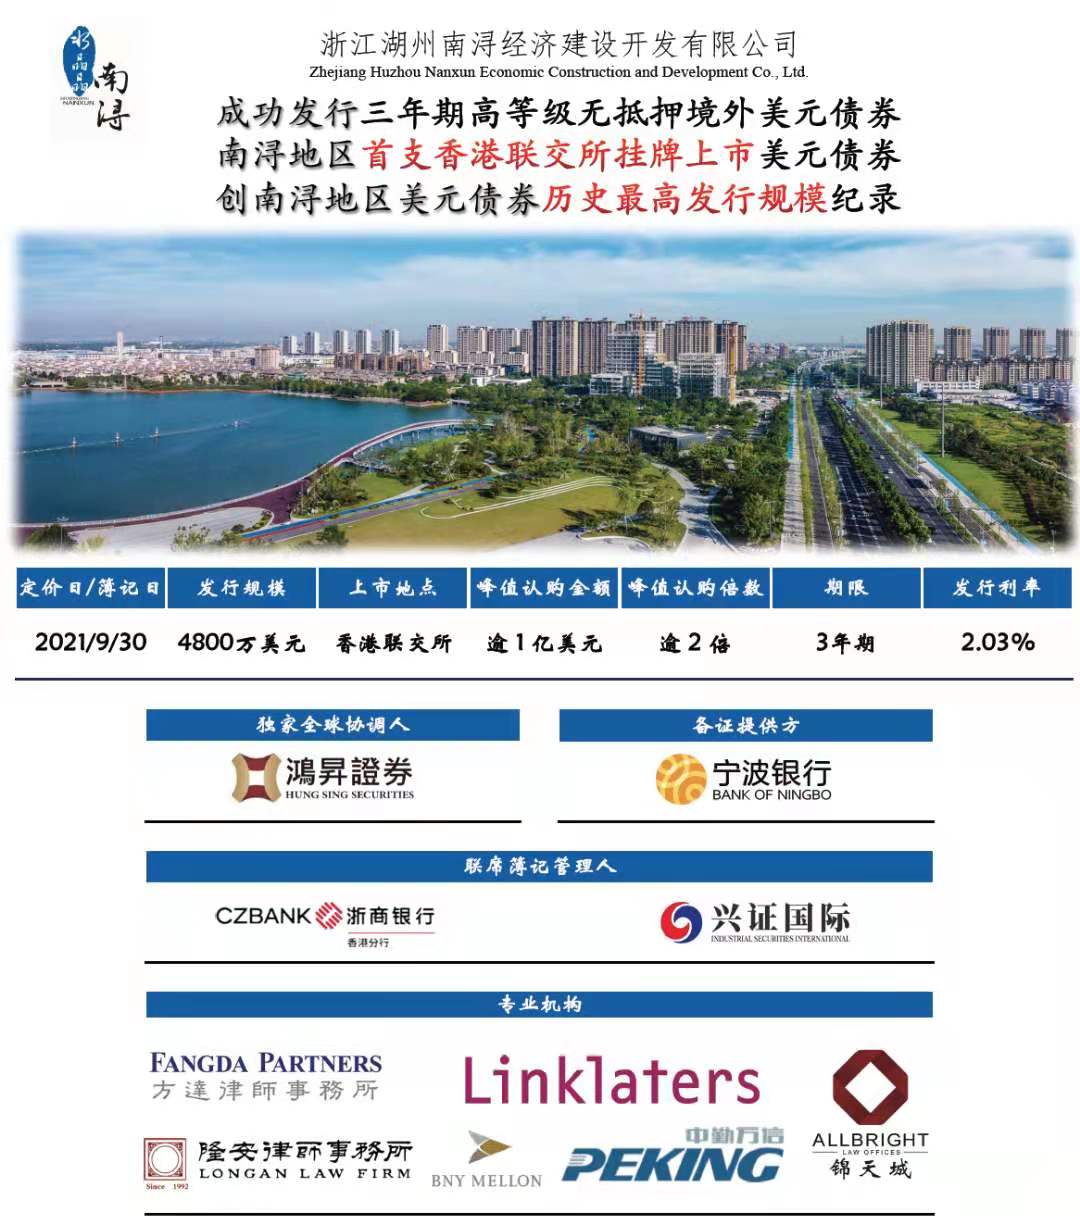 2021 - 浙江湖州南潯經濟建設開發有限公司 - 獨家全球協調人